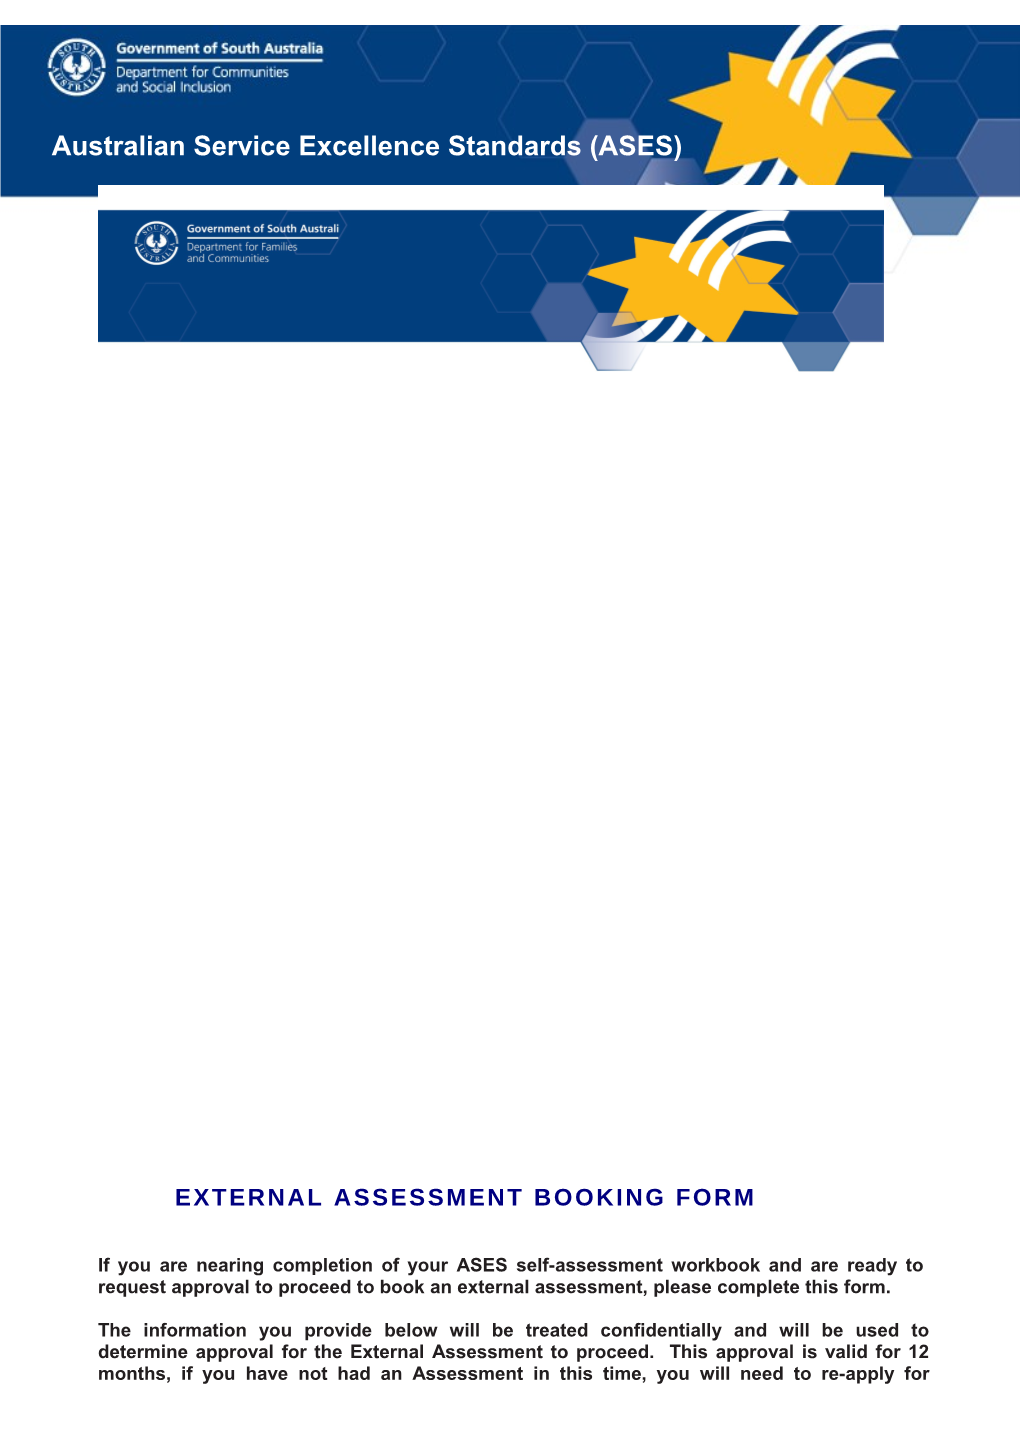 External Assessment Booking Form